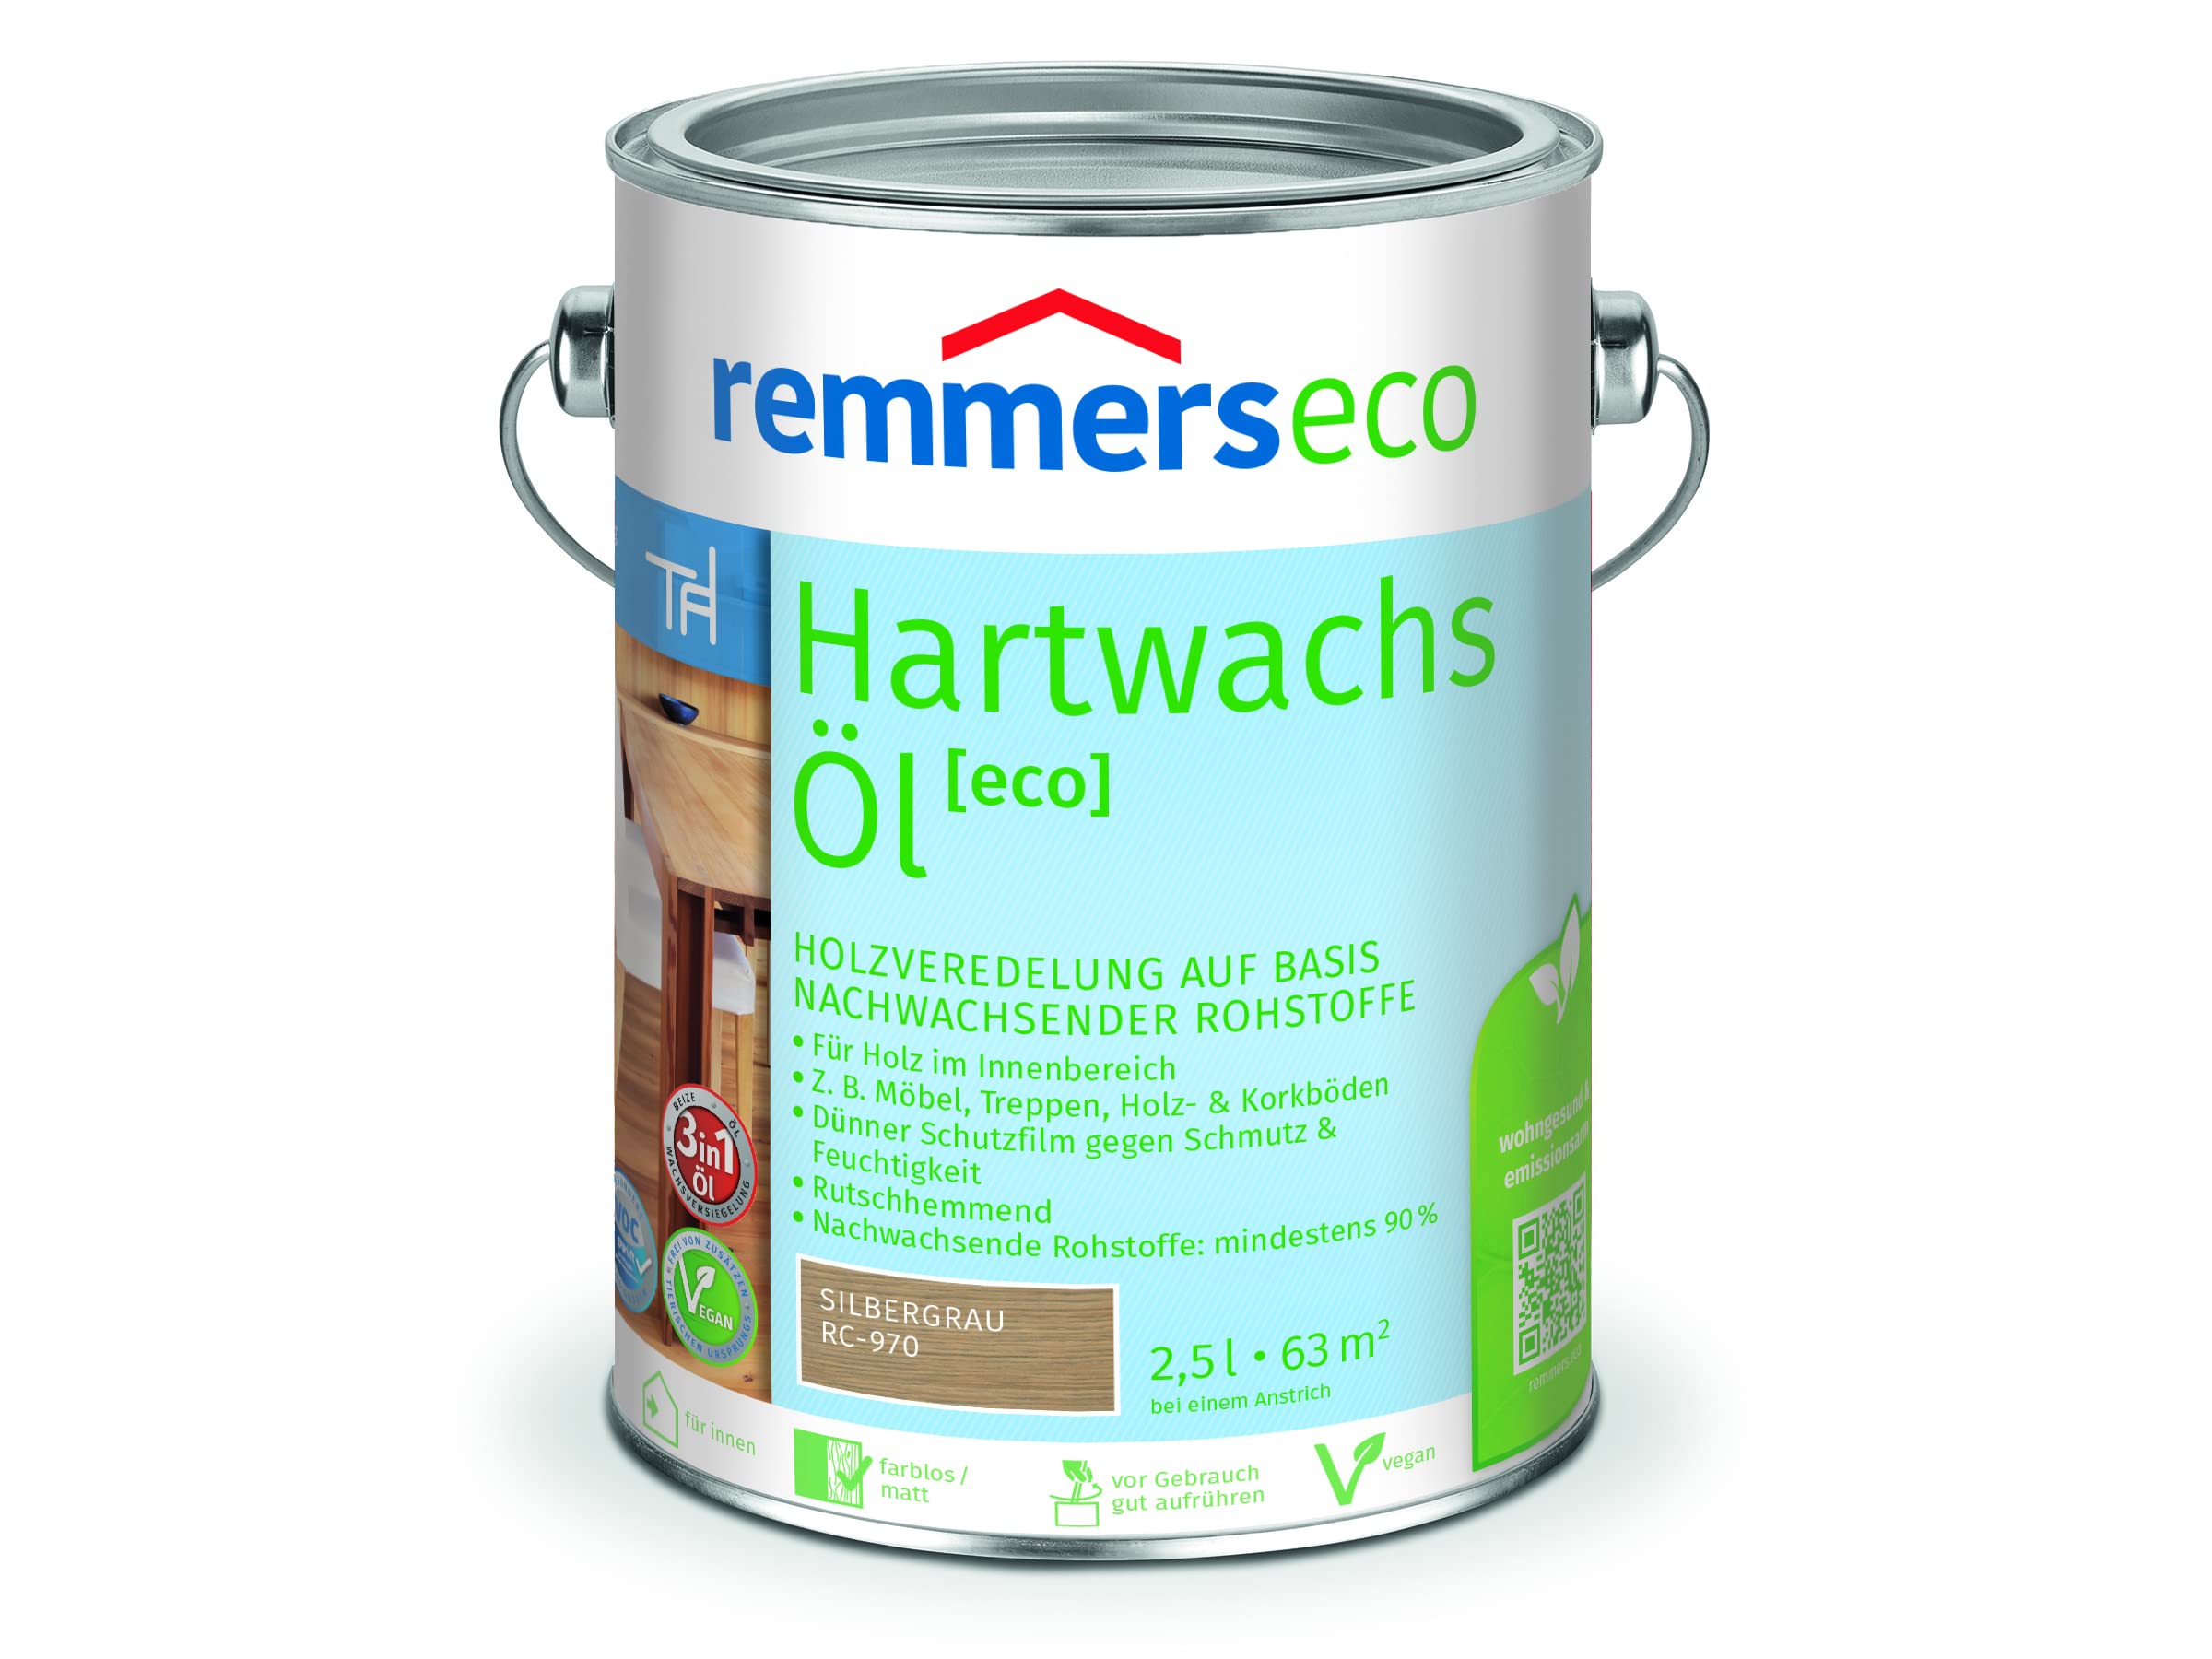 Remmers Hartwachs-Öl [eco] silbergrau, 2,5 Liter, Hartwachsöl für innen, natürliche Basis, Beize, Öl und Versiegelung in einem, nachhaltig, vegan